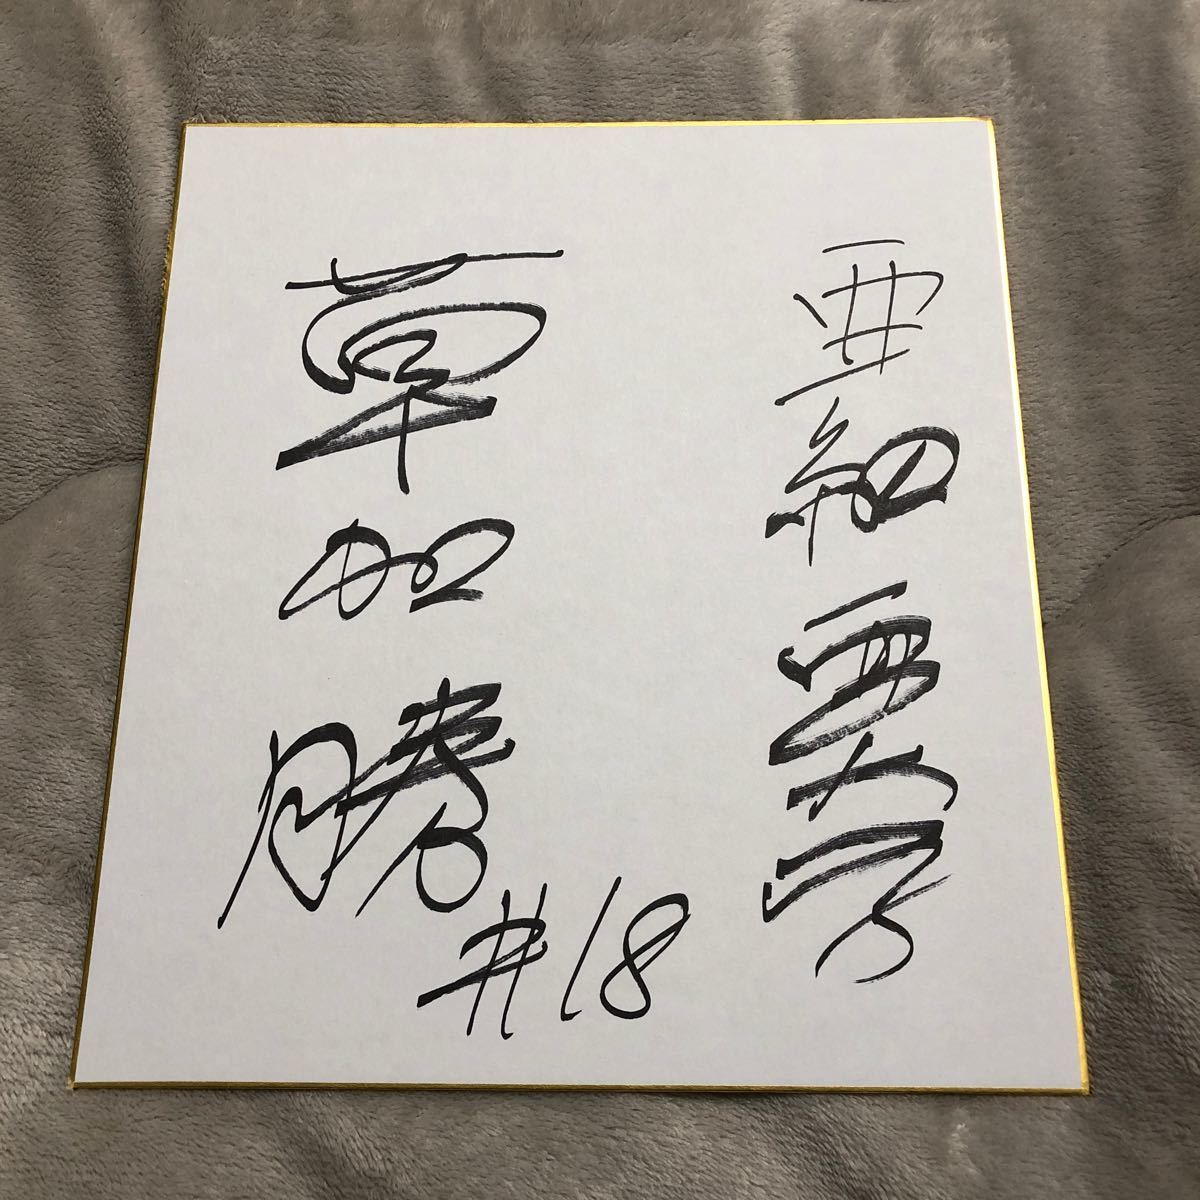 Chunichi Dragons Масару Сока с автографом, цветная бумага, новичок, новичок, бейсбол, Сувенир, Сопутствующие товары, знак